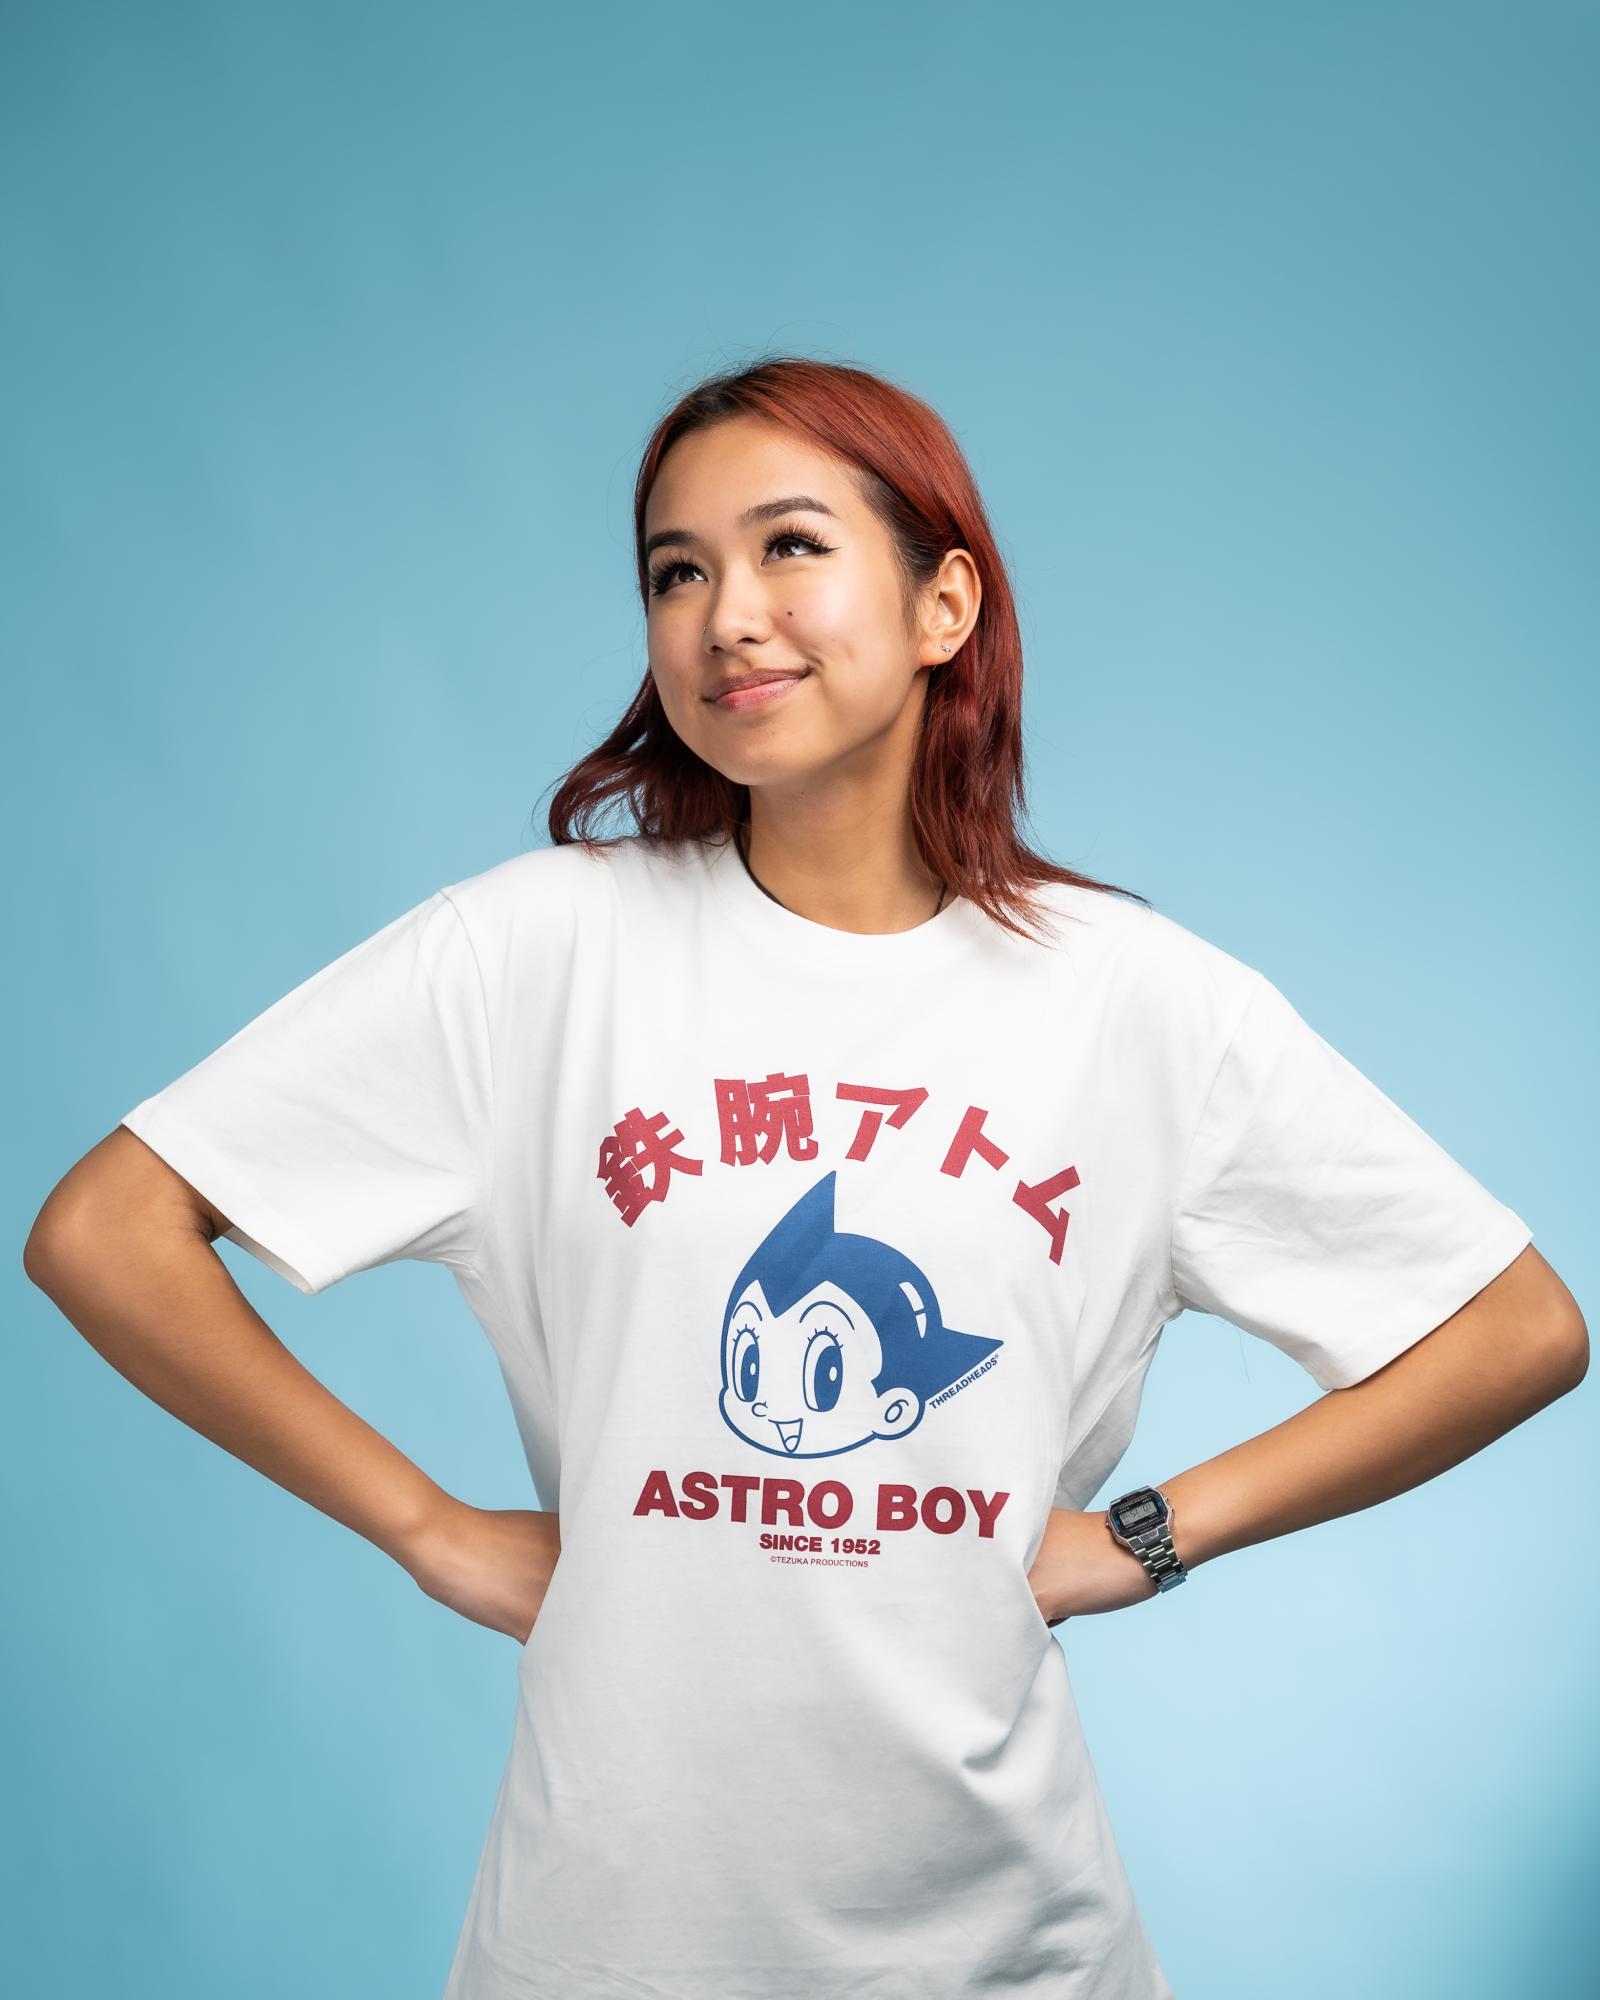 Astro Boy Shirt Boys, Astro Boy Cotton Tee, Astro Shirts Men